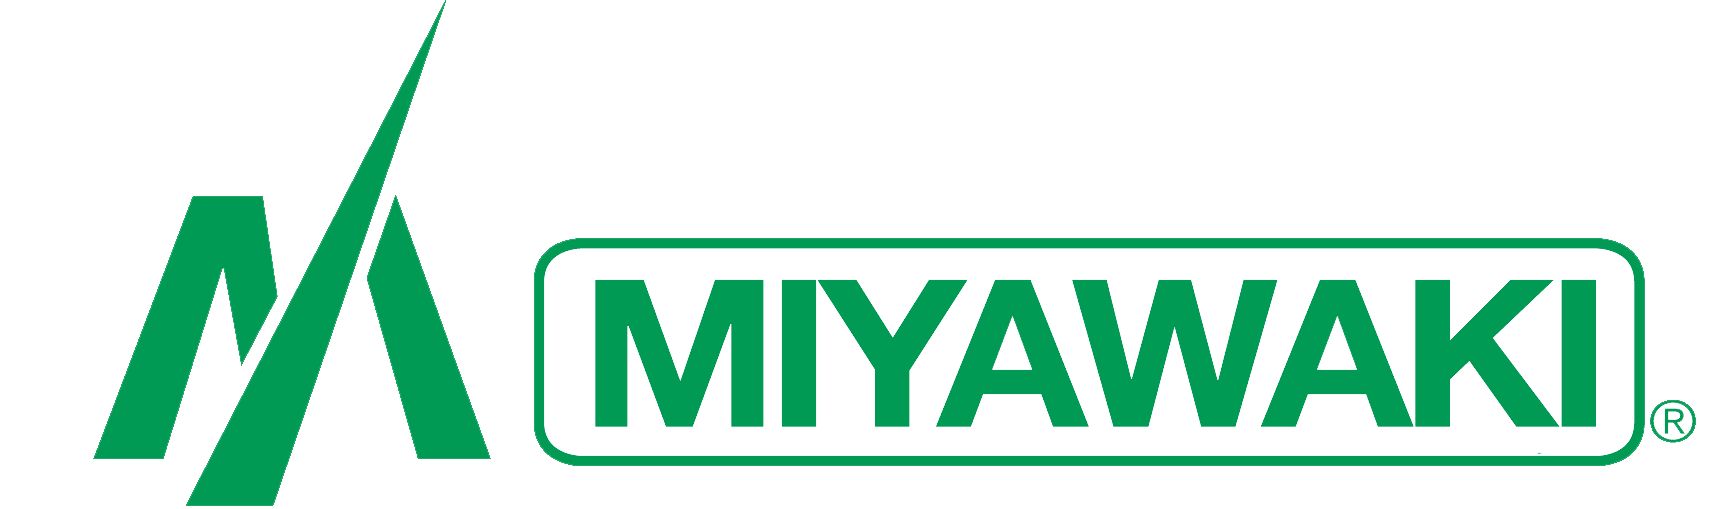 MIYAWAKI